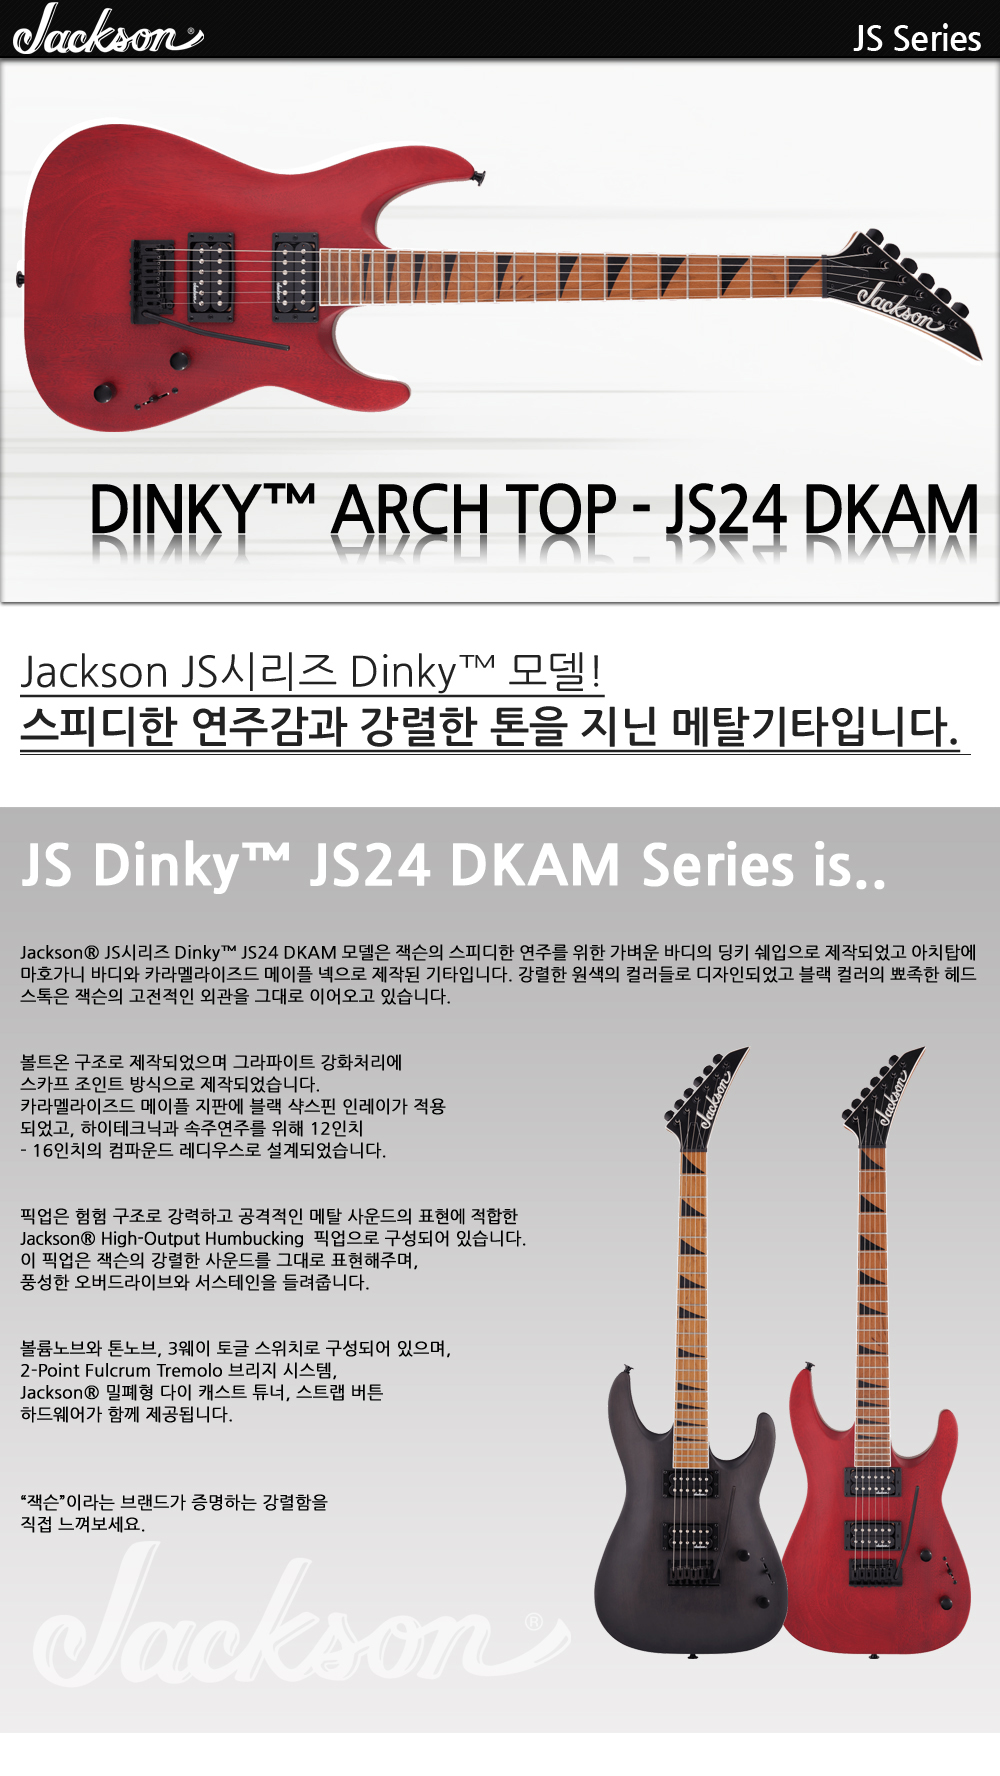 Jackson-JS-Dinky-JS24-DKAM-RedStain_1_113737.jpg